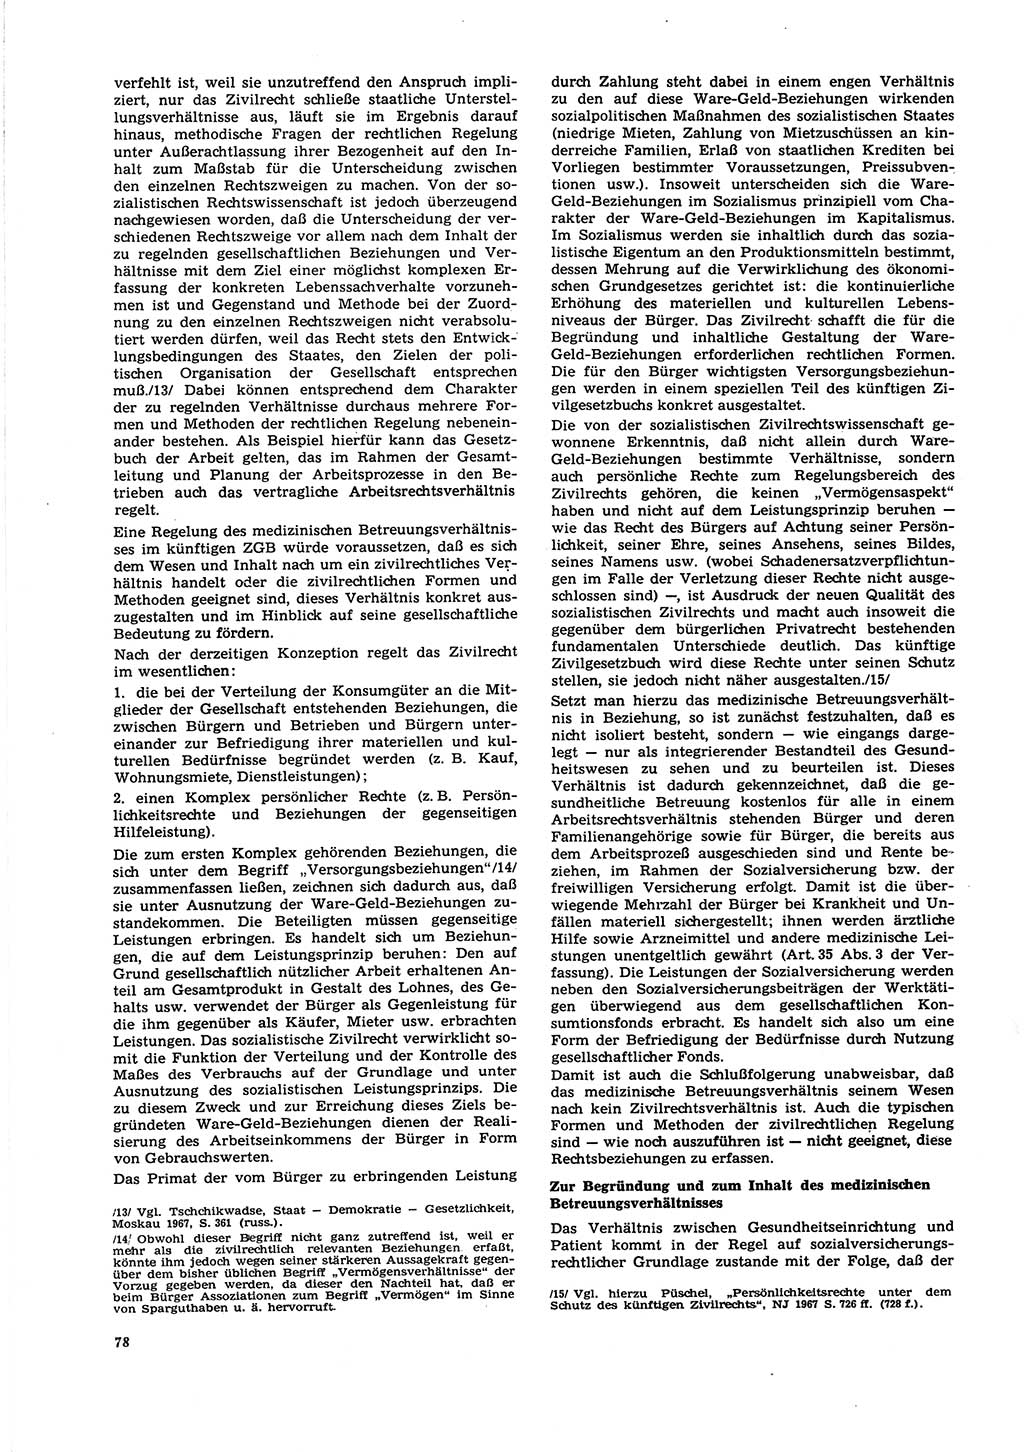 Neue Justiz (NJ), Zeitschrift für Recht und Rechtswissenschaft [Deutsche Demokratische Republik (DDR)], 27. Jahrgang 1973, Seite 78 (NJ DDR 1973, S. 78)